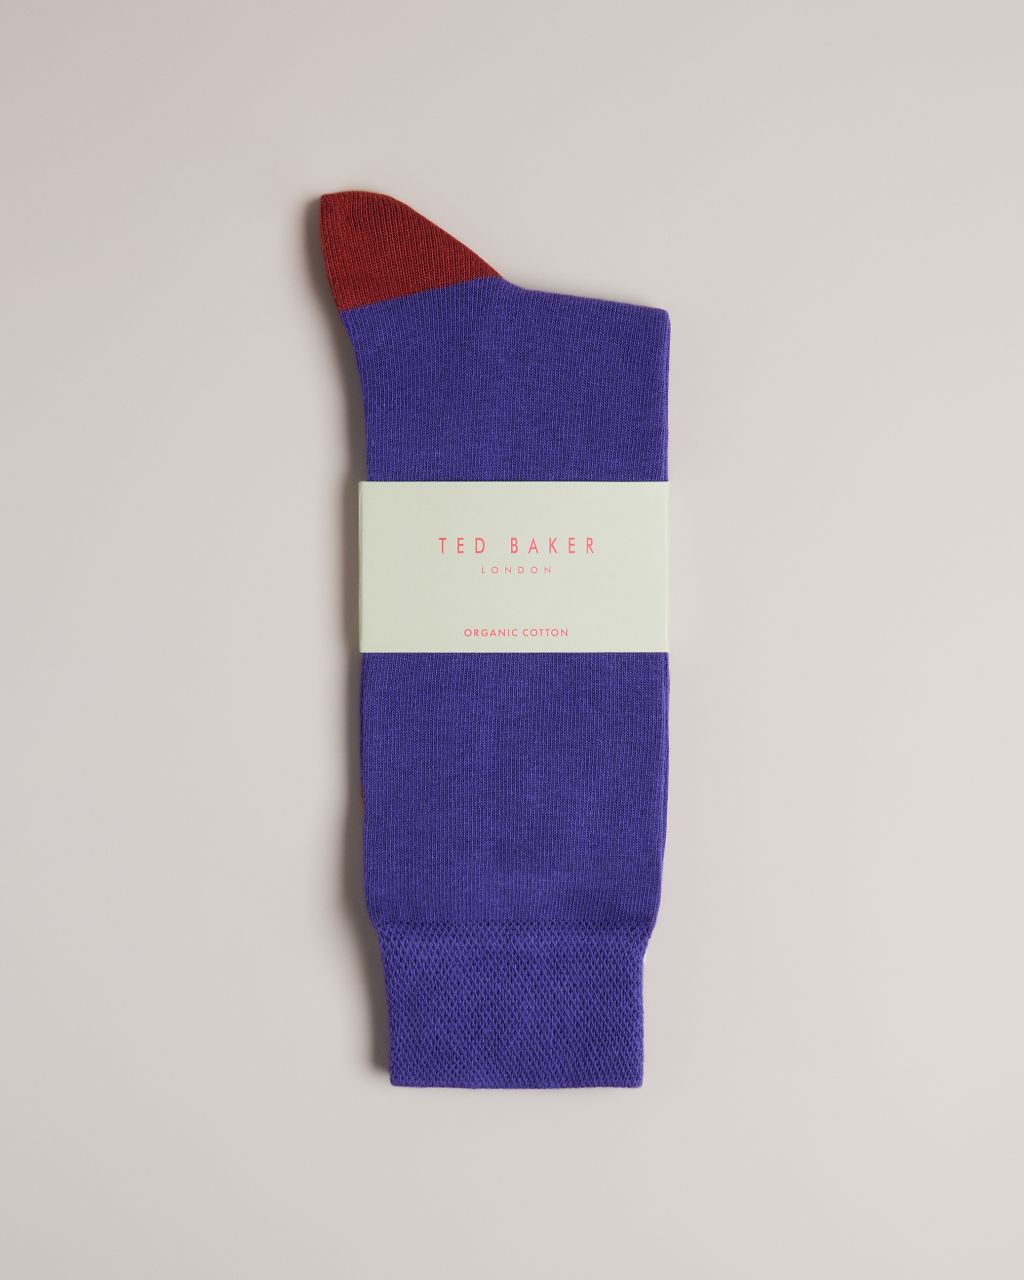 Ted Baker Men's Plain Sock in Medium Blue, Clasic